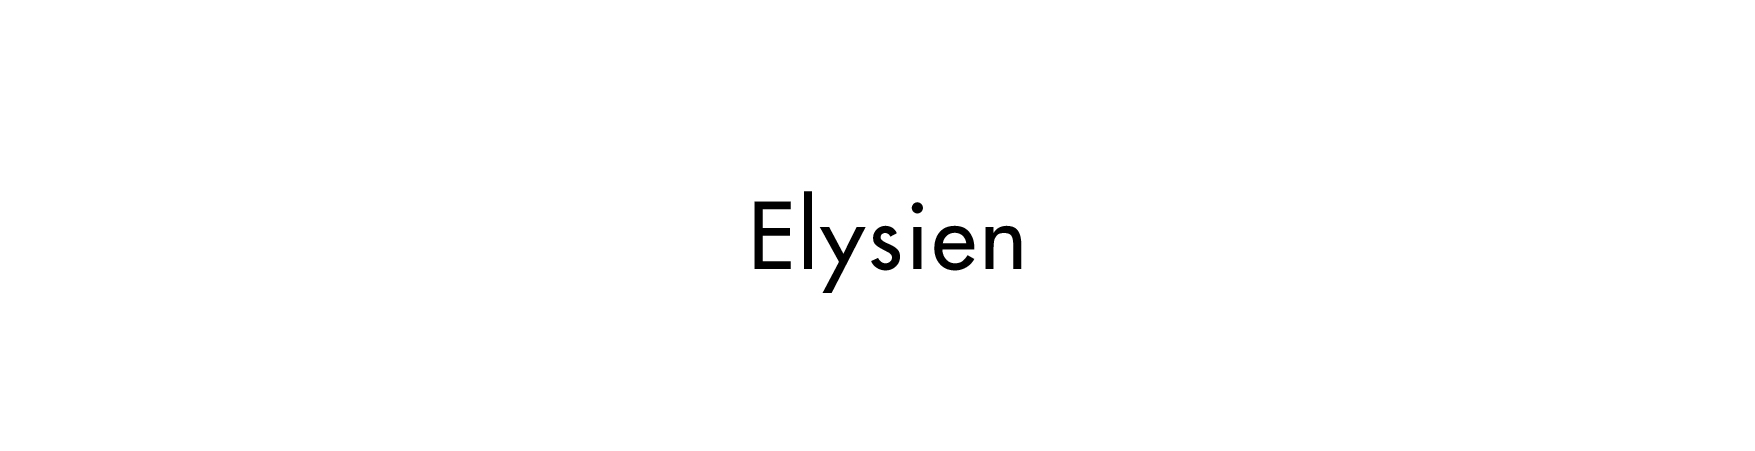 Elysien